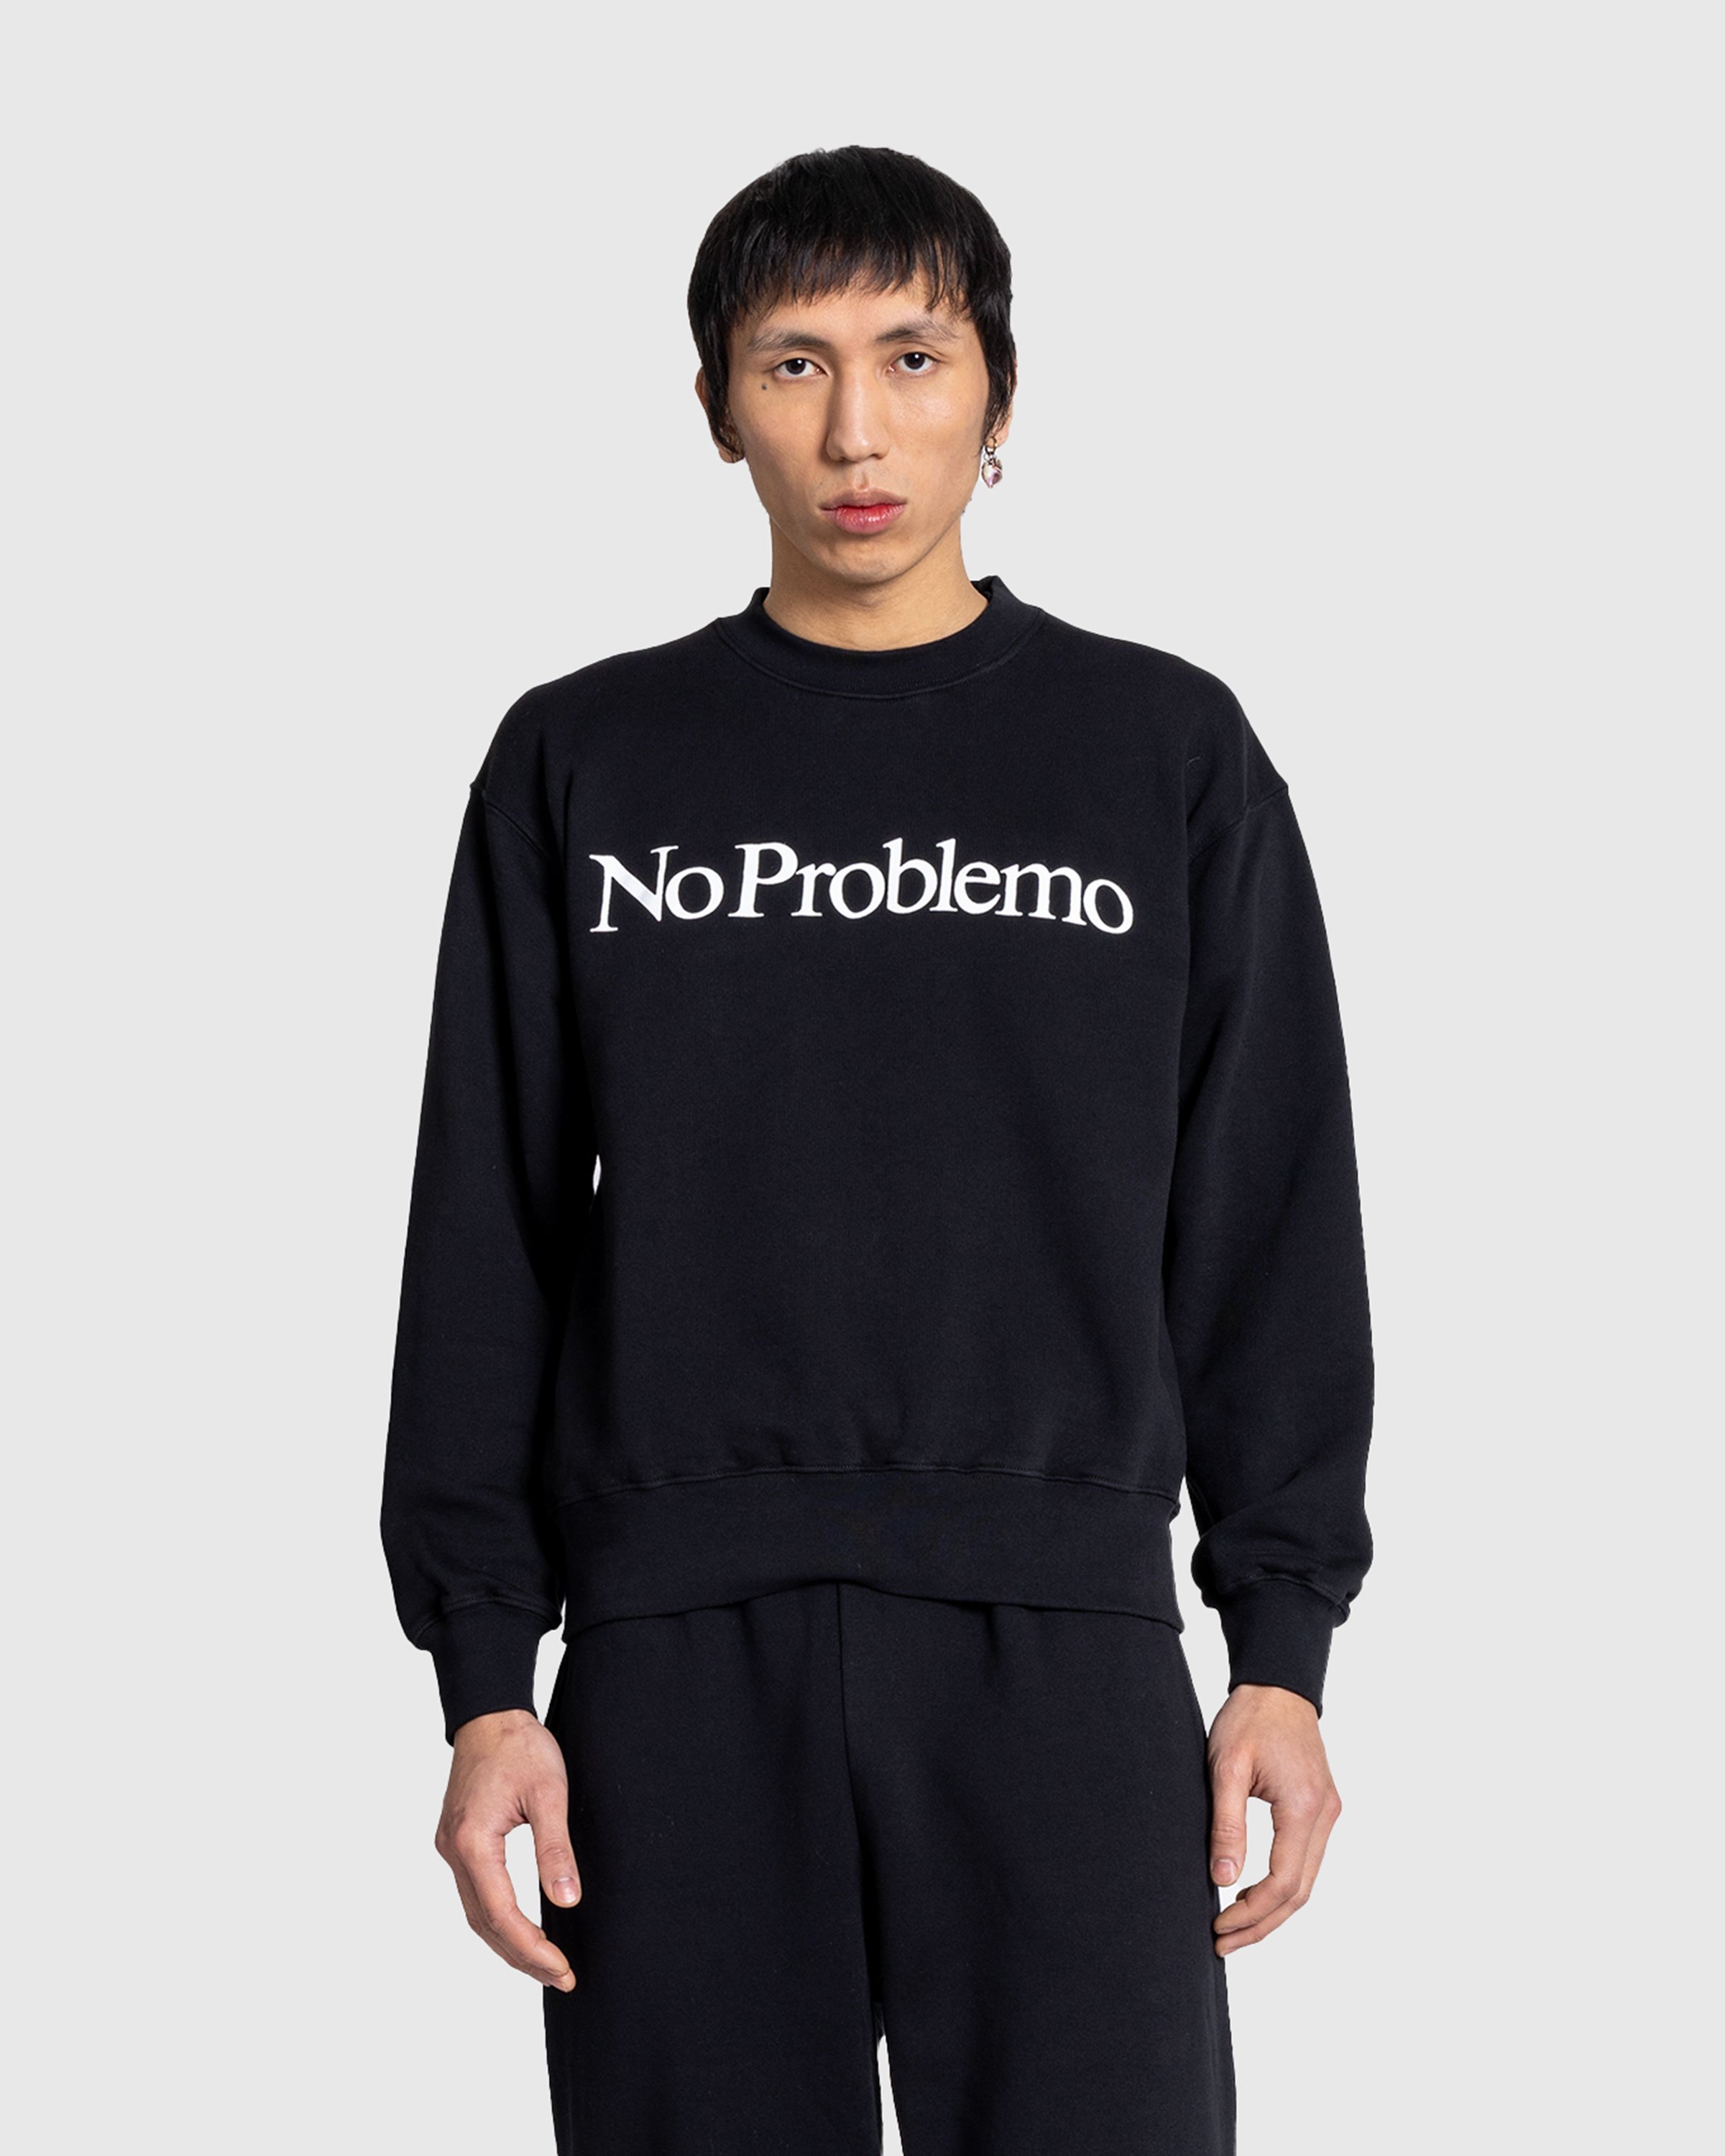 Aries - No Problemo Sweatshirt Black - Clothing - Black - Image 2